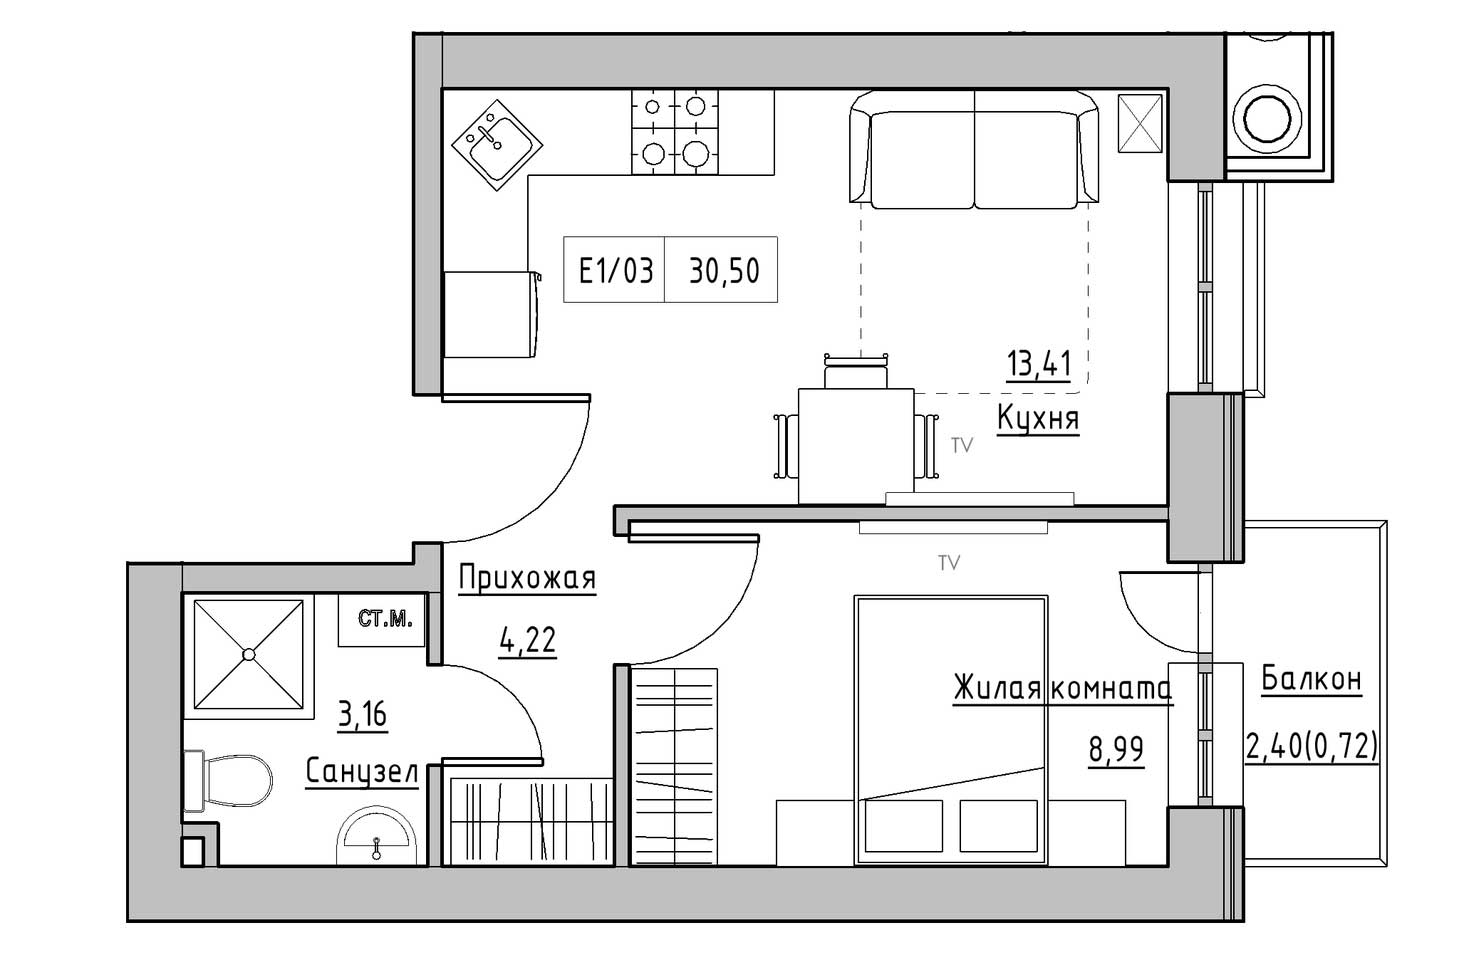 Планировка 1-к квартира площей 30.5м2, KS-009-02/0002.